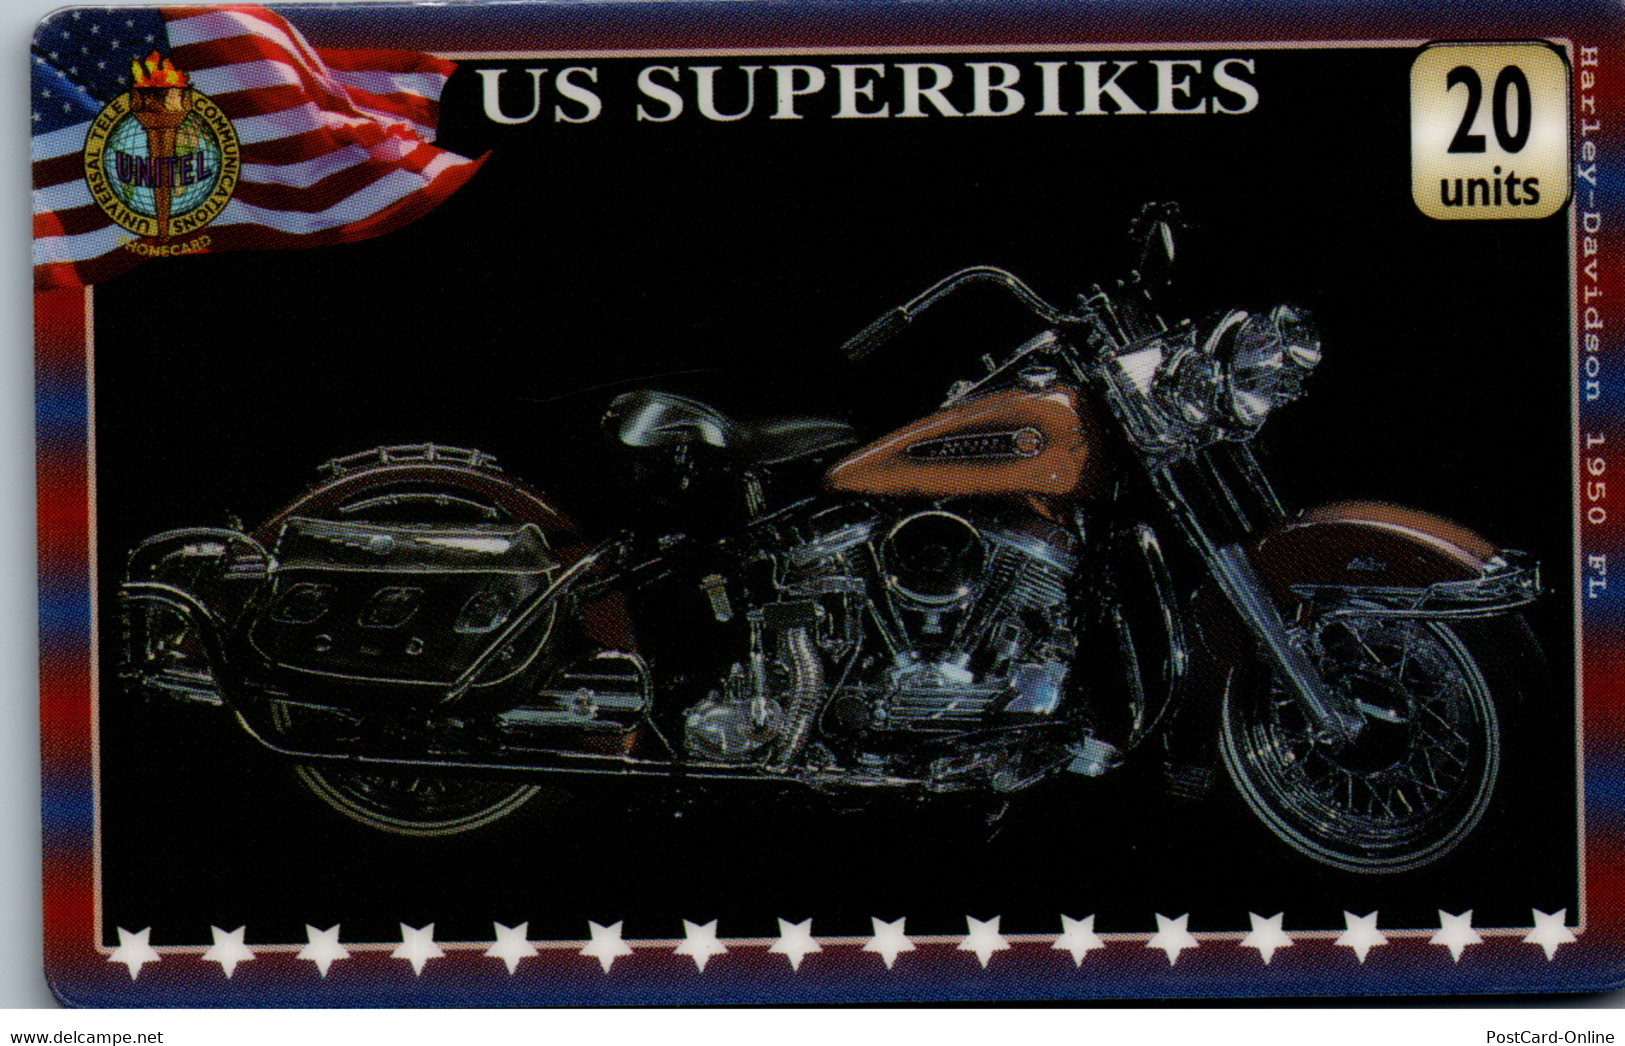 20333 - Großbritannien - UniTel , US Superbikes , Harley Davidson - BT Global Cards (Prepaid)